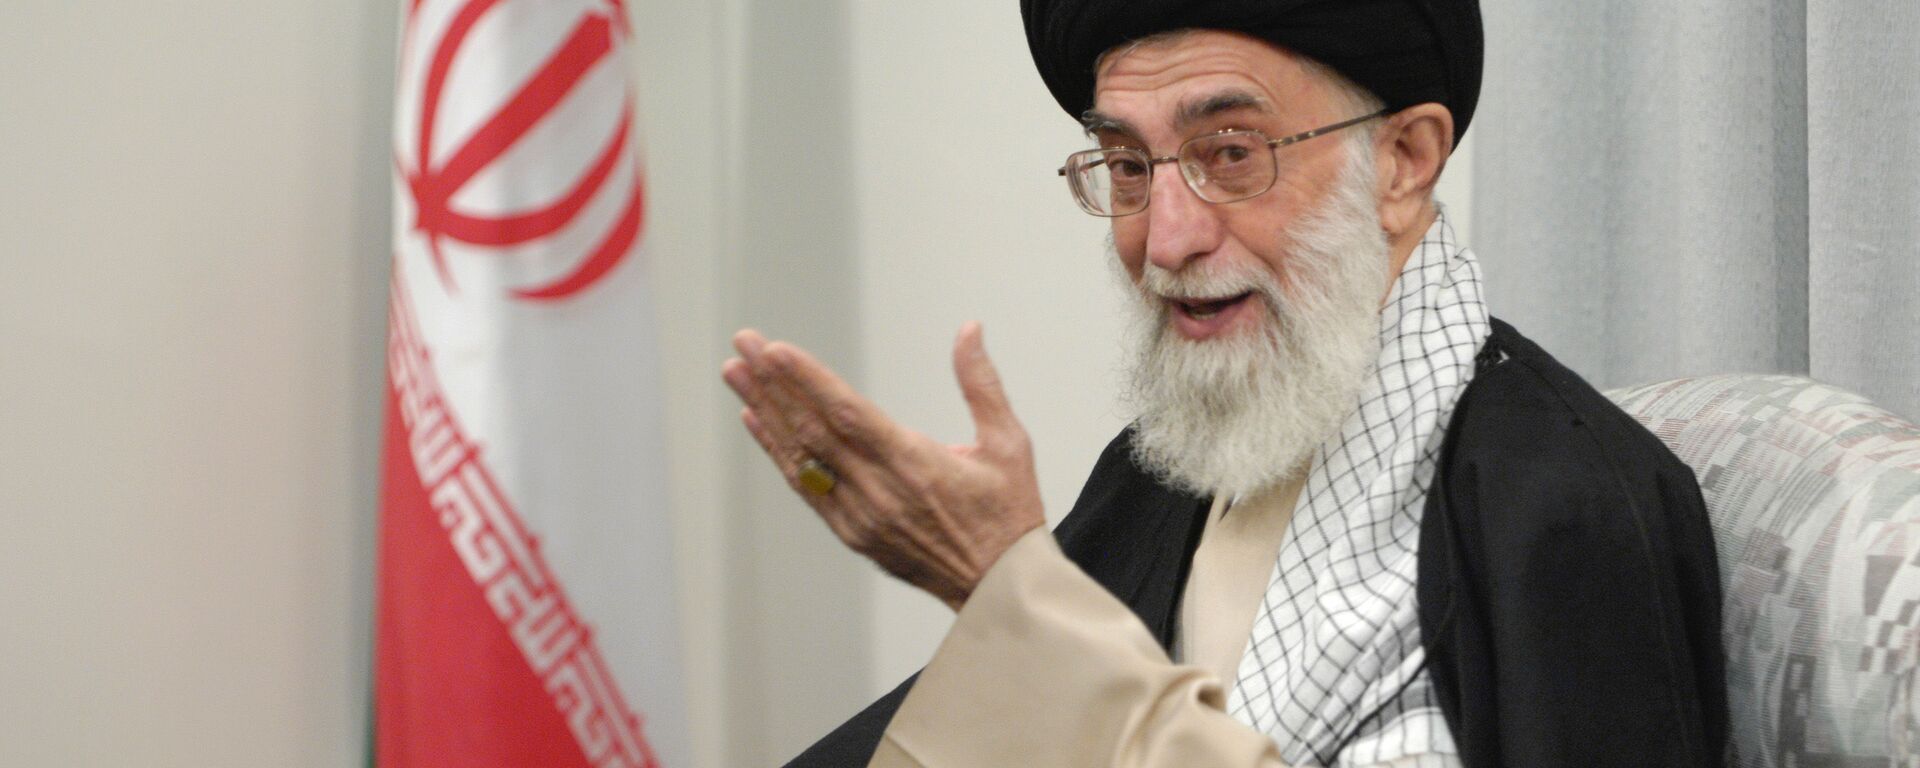 Руководитель Исламской Республики Иран аятолла Сейед Али Хаменеи  - Sputnik Армения, 1920, 08.01.2021